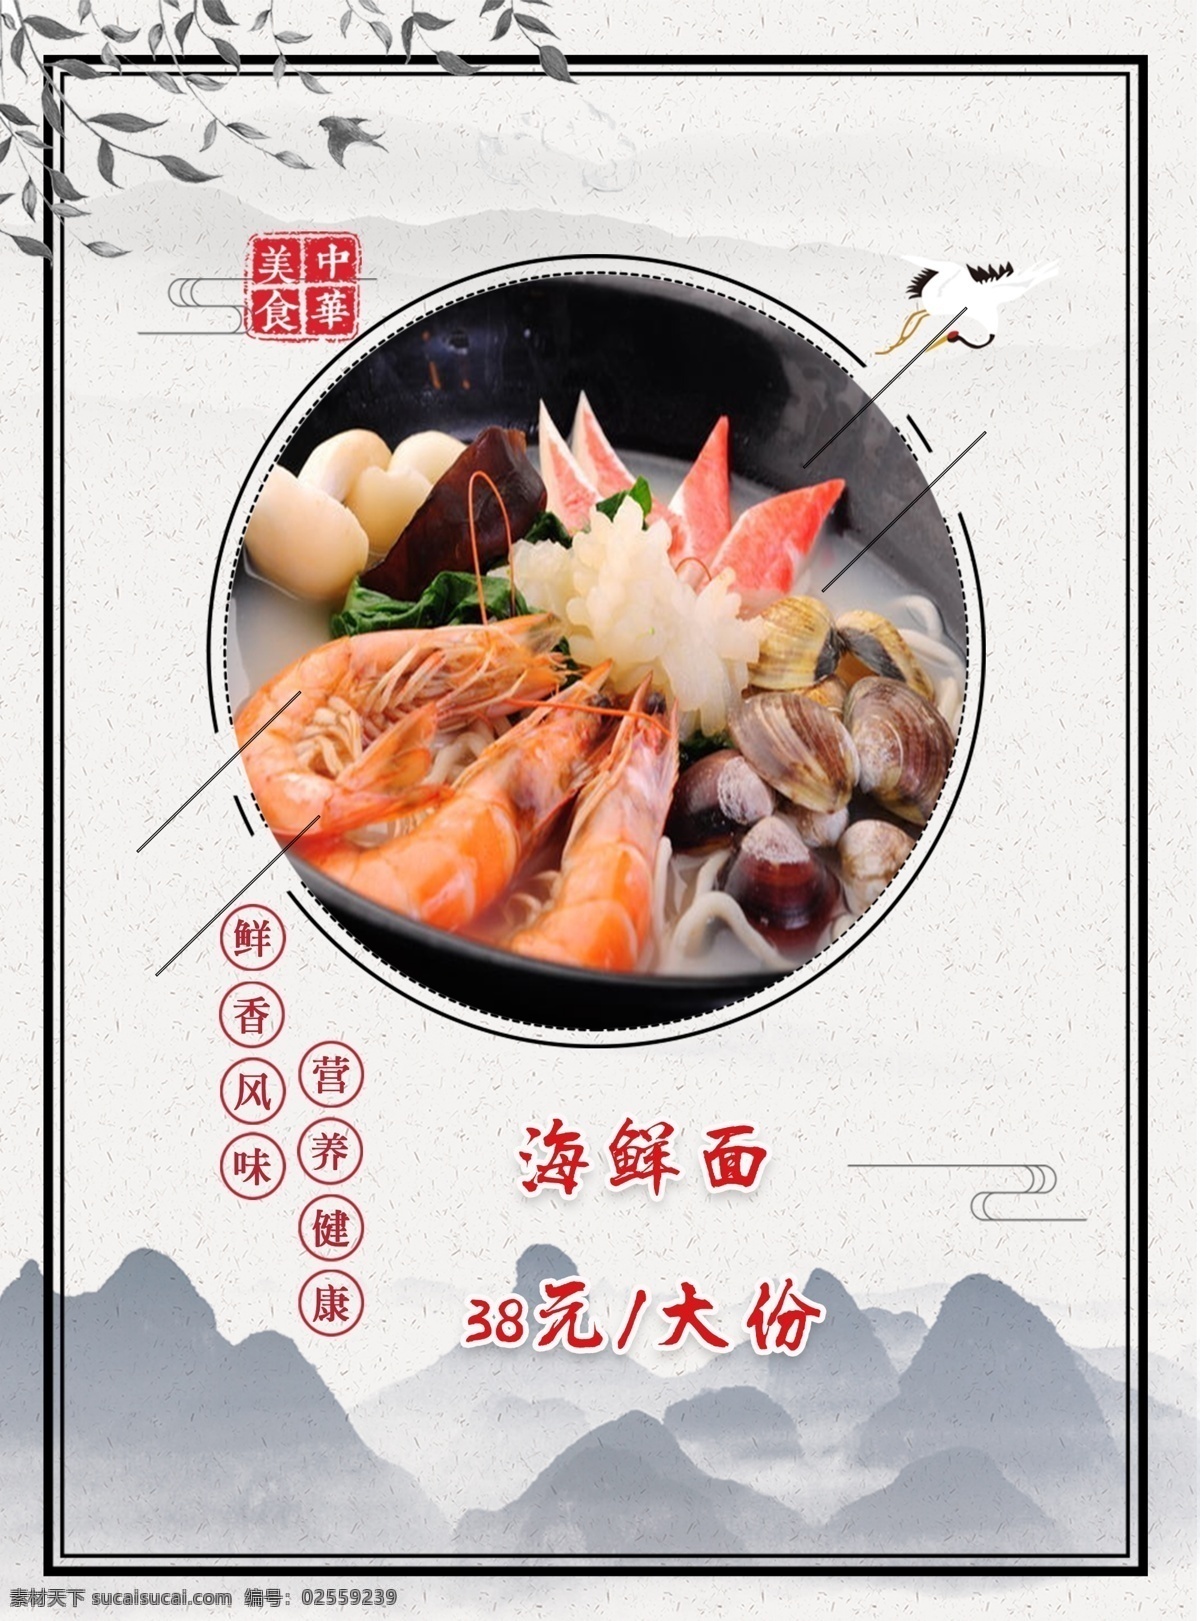 海鲜 价格表 二 十 三 美味 健康 中华美食 海鲜面 美食 中餐